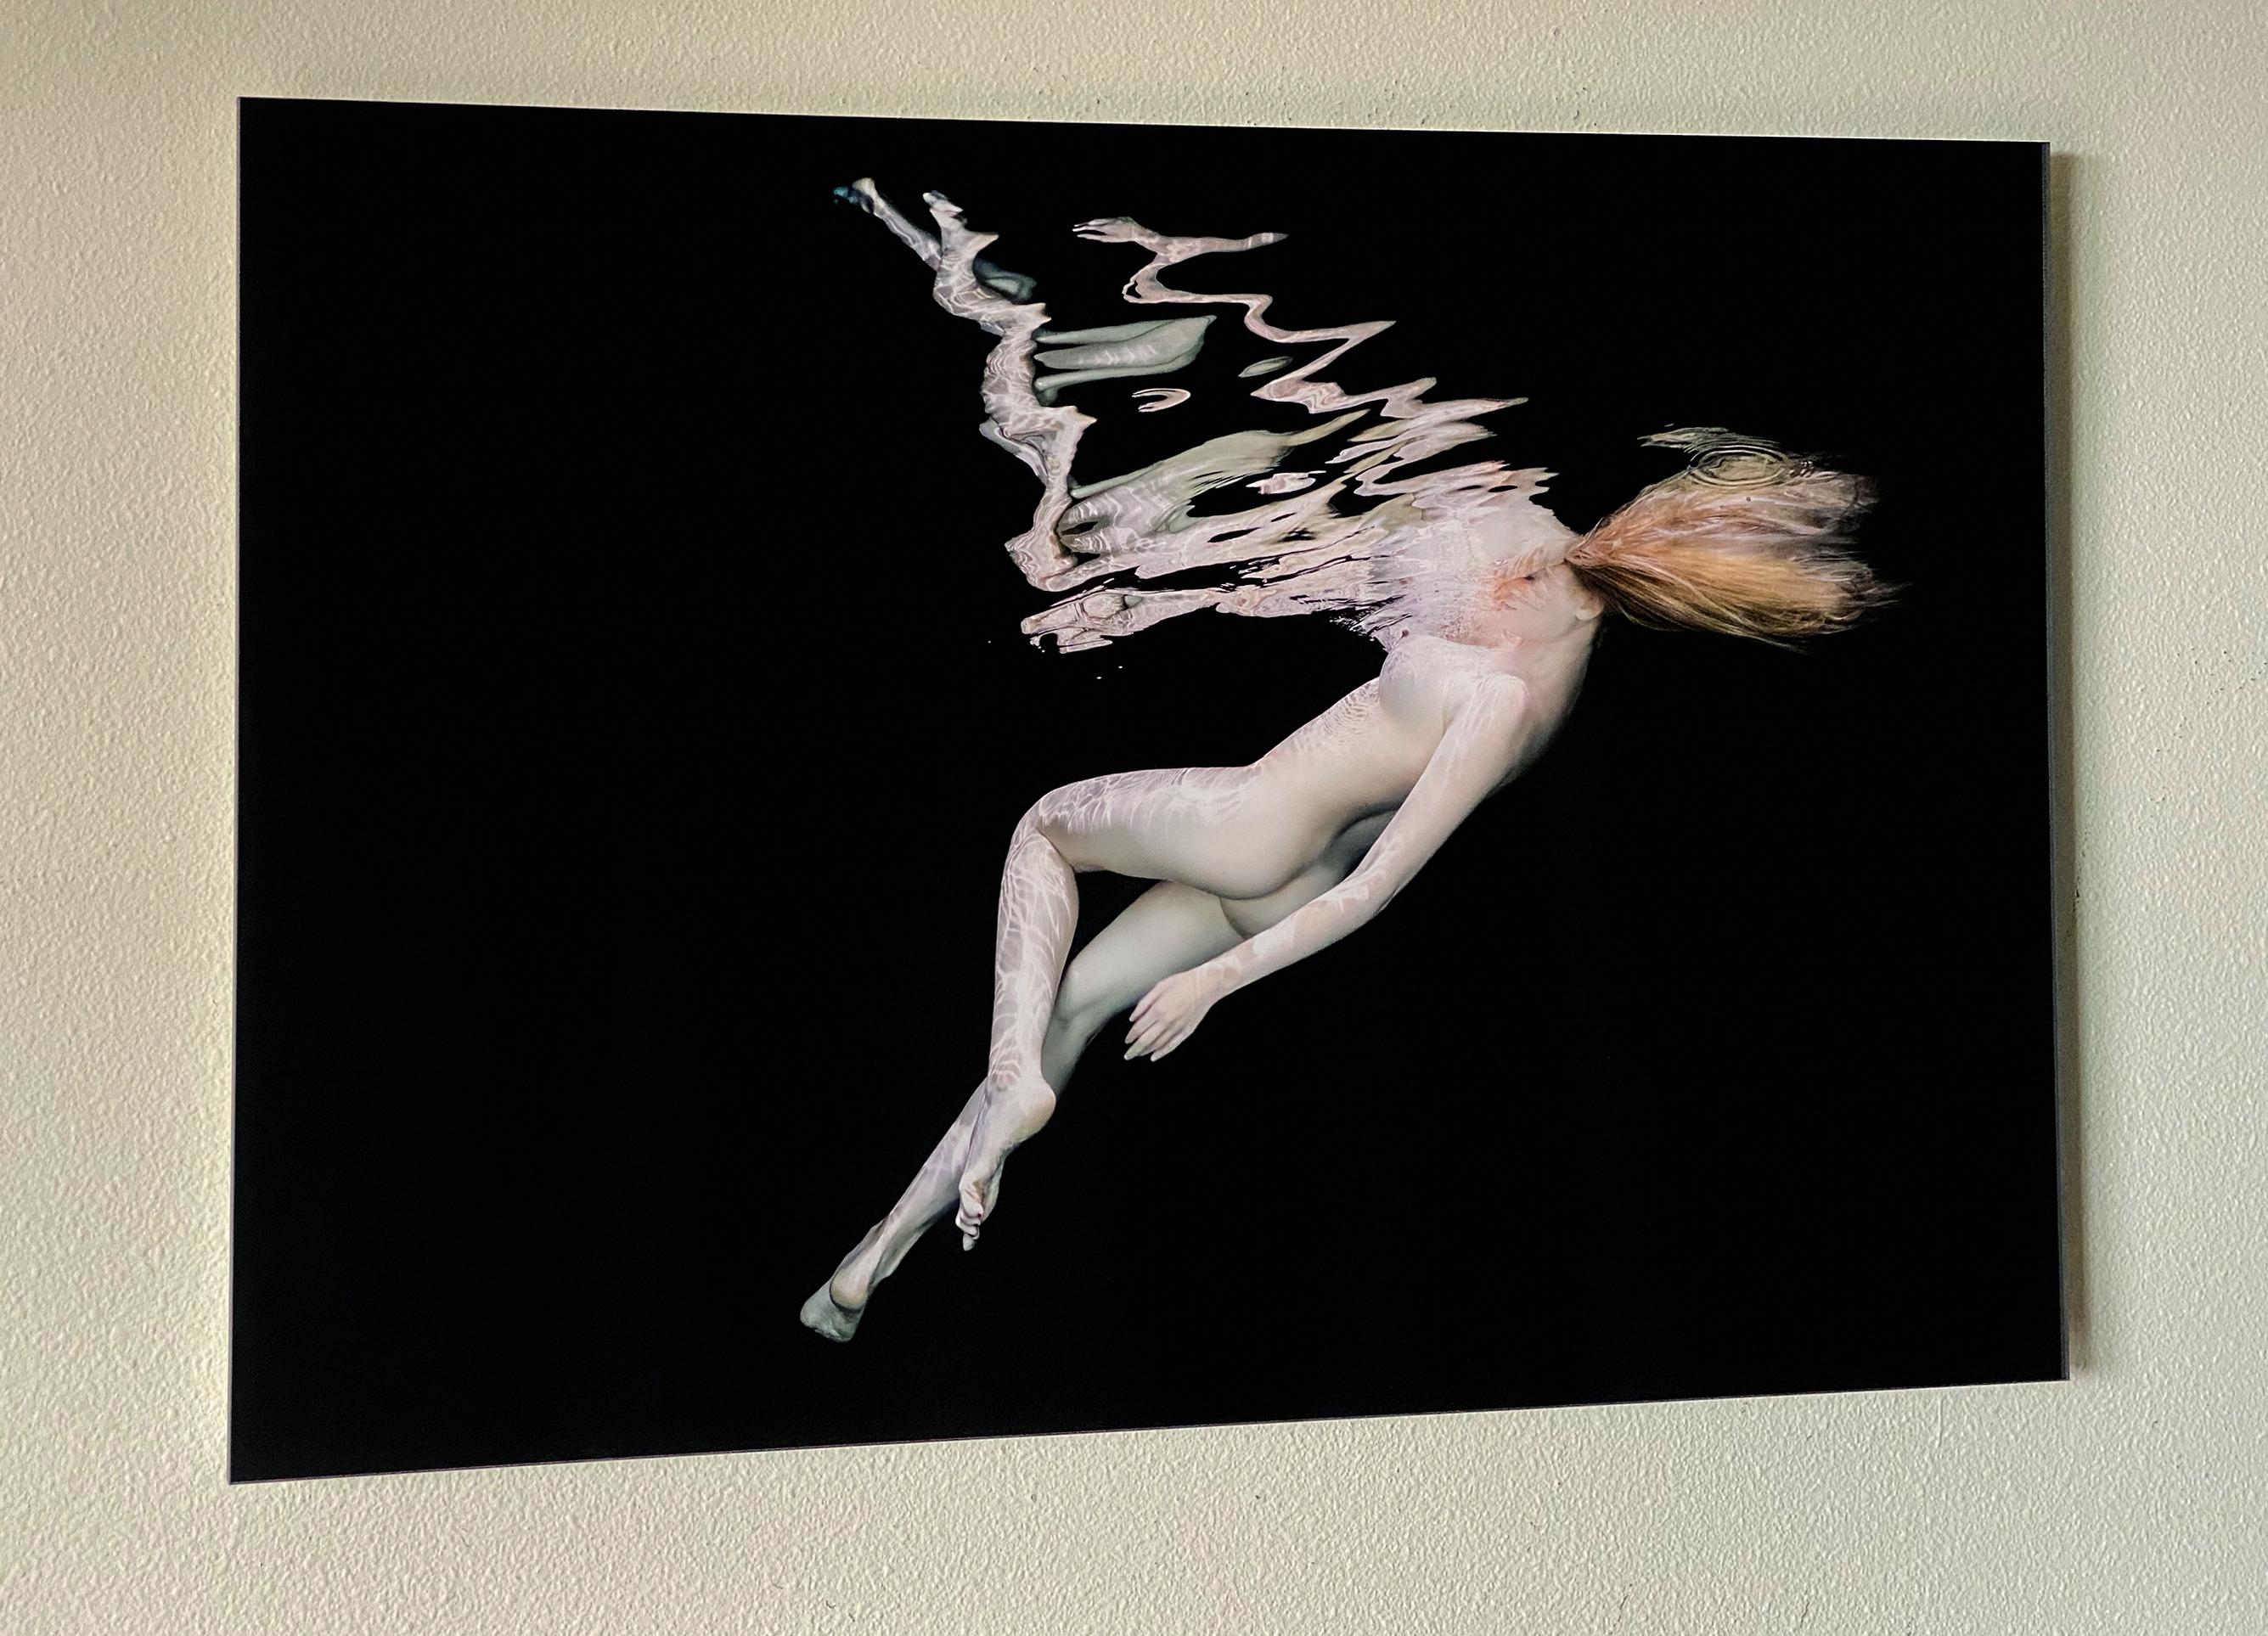 Porcelain III  - underwater nude photograph - acrylic print 24